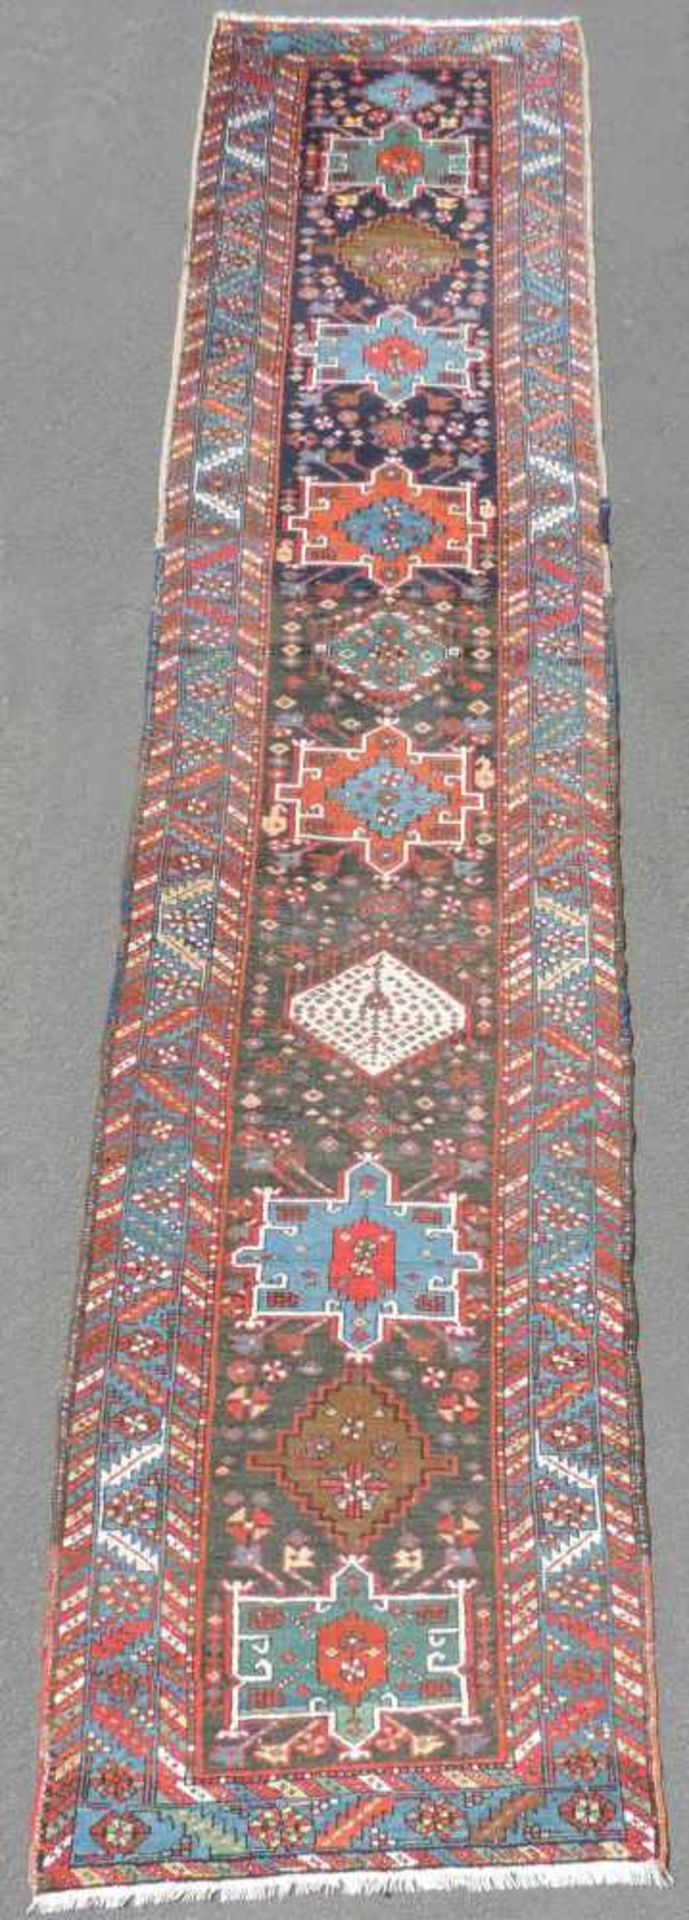 Heris / Karadja Perserteppich. Galerie. Iran. Antik, um 1900.415 cm x 92 cm. Handgeknüpft. Wolle auf